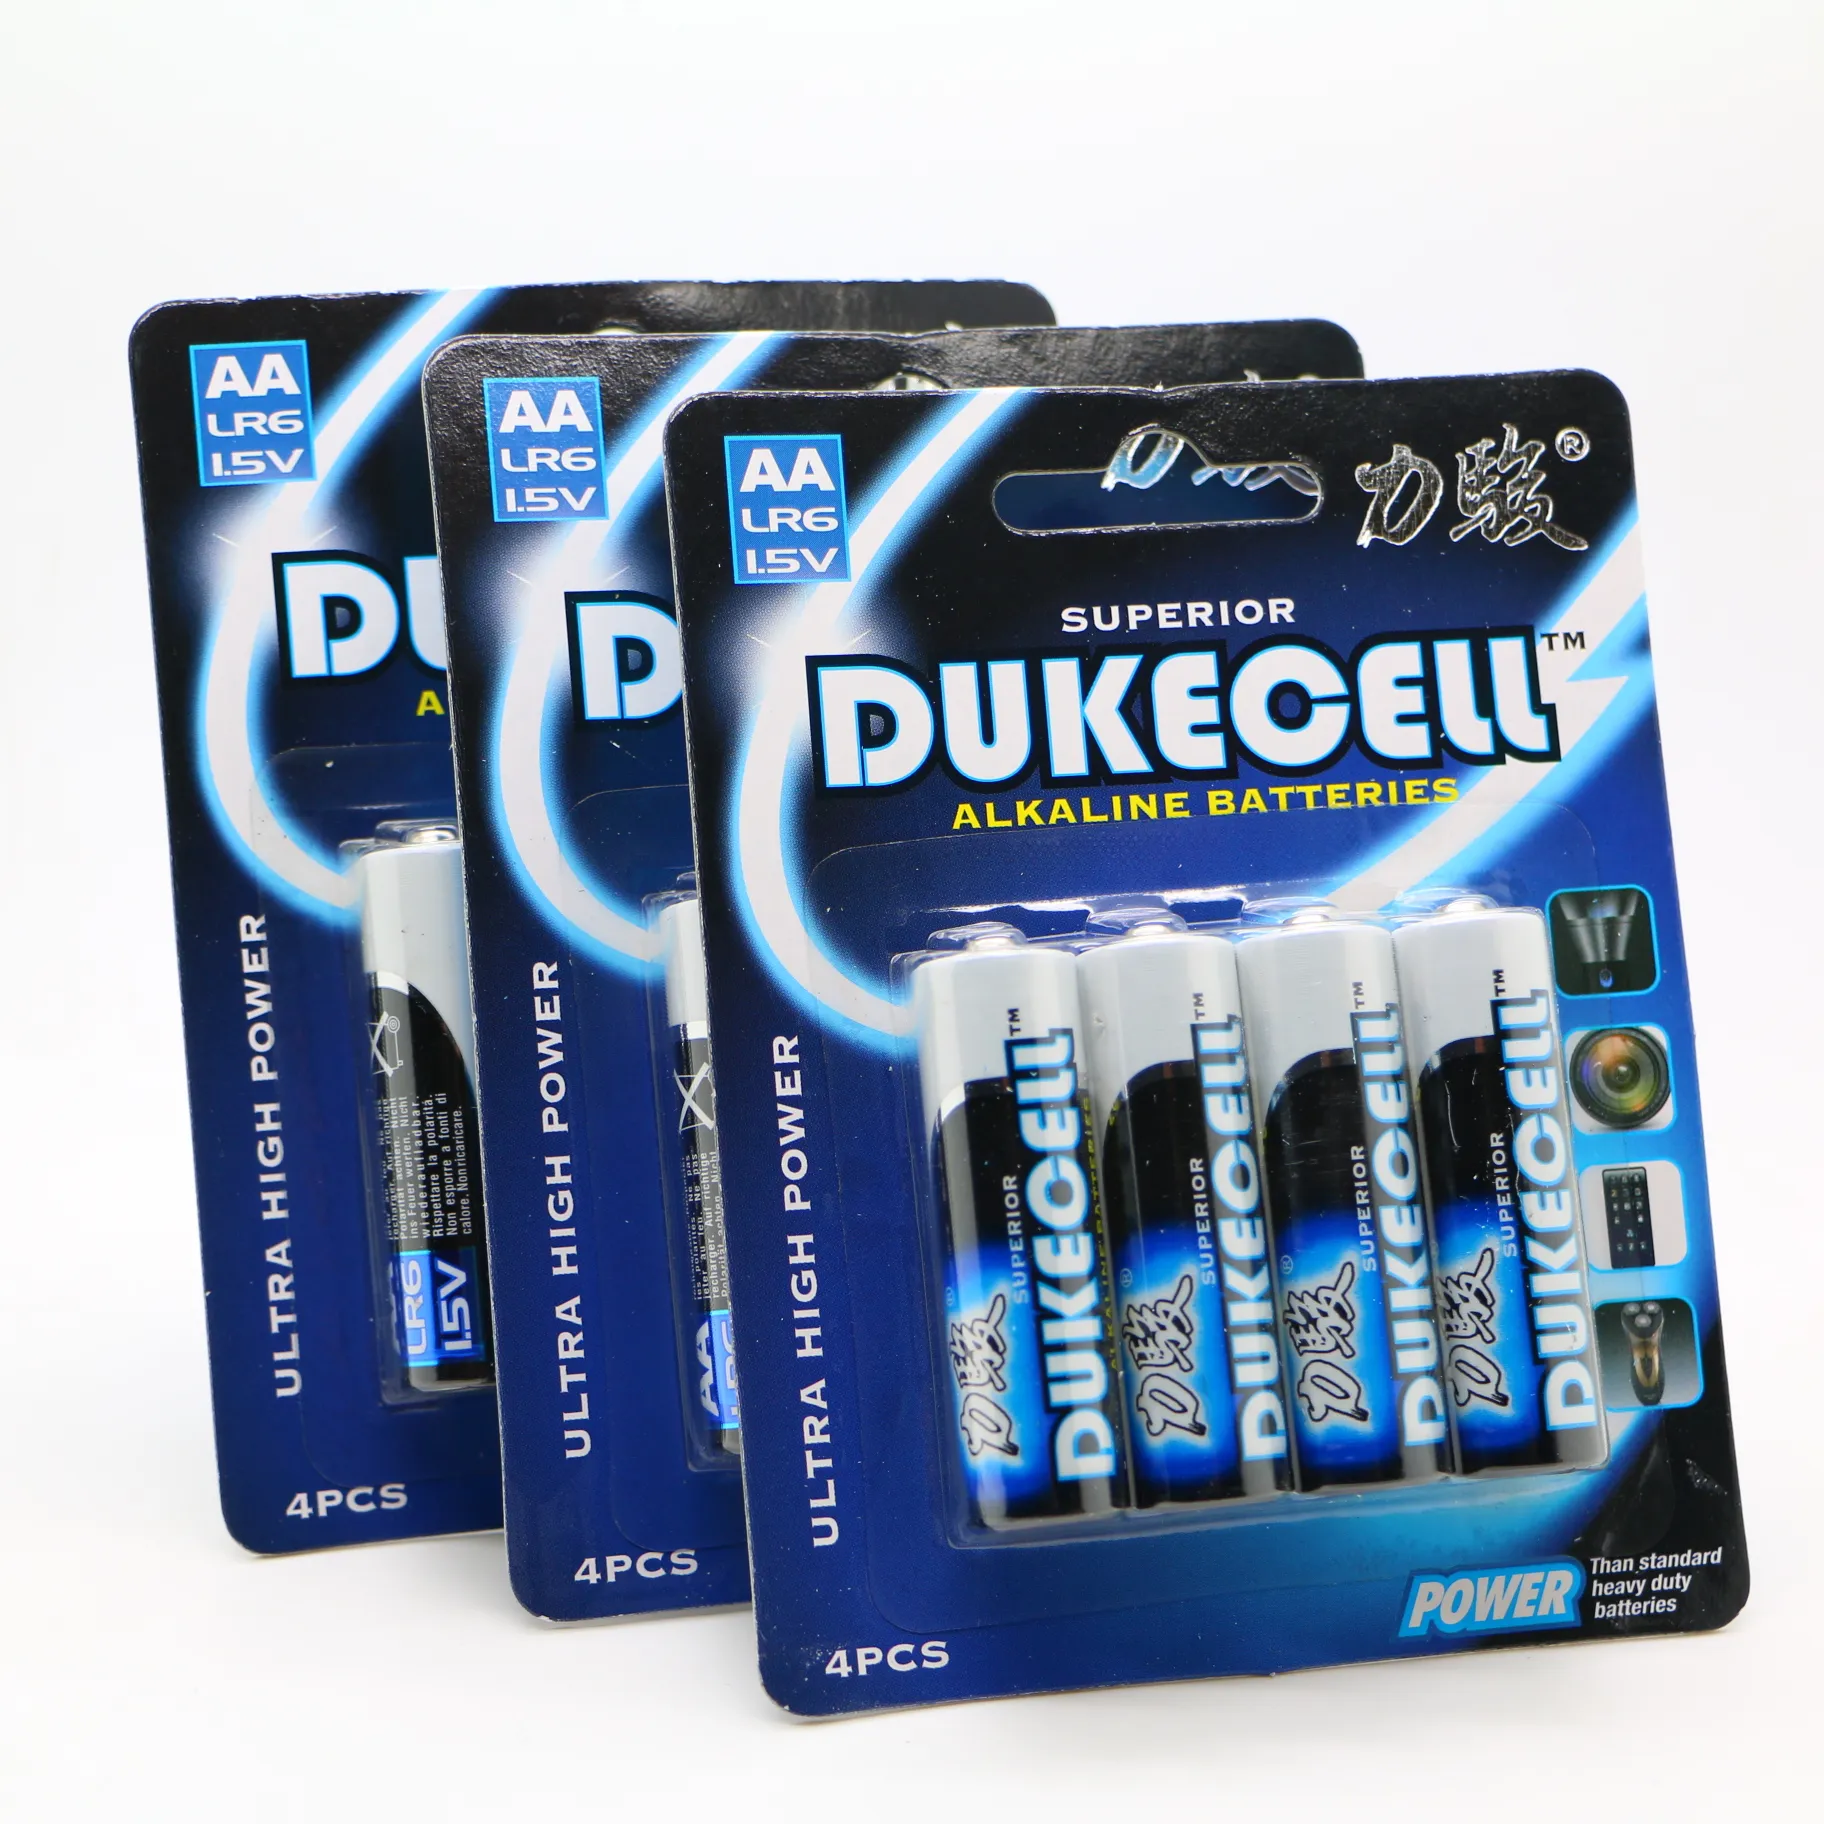 Dukecell r6 AA um3 kuru pil alkali pil çocuklar için elektrikli araba ceket oyuncaklar batı OEM zaman değil şarj edilebilir folyo raf